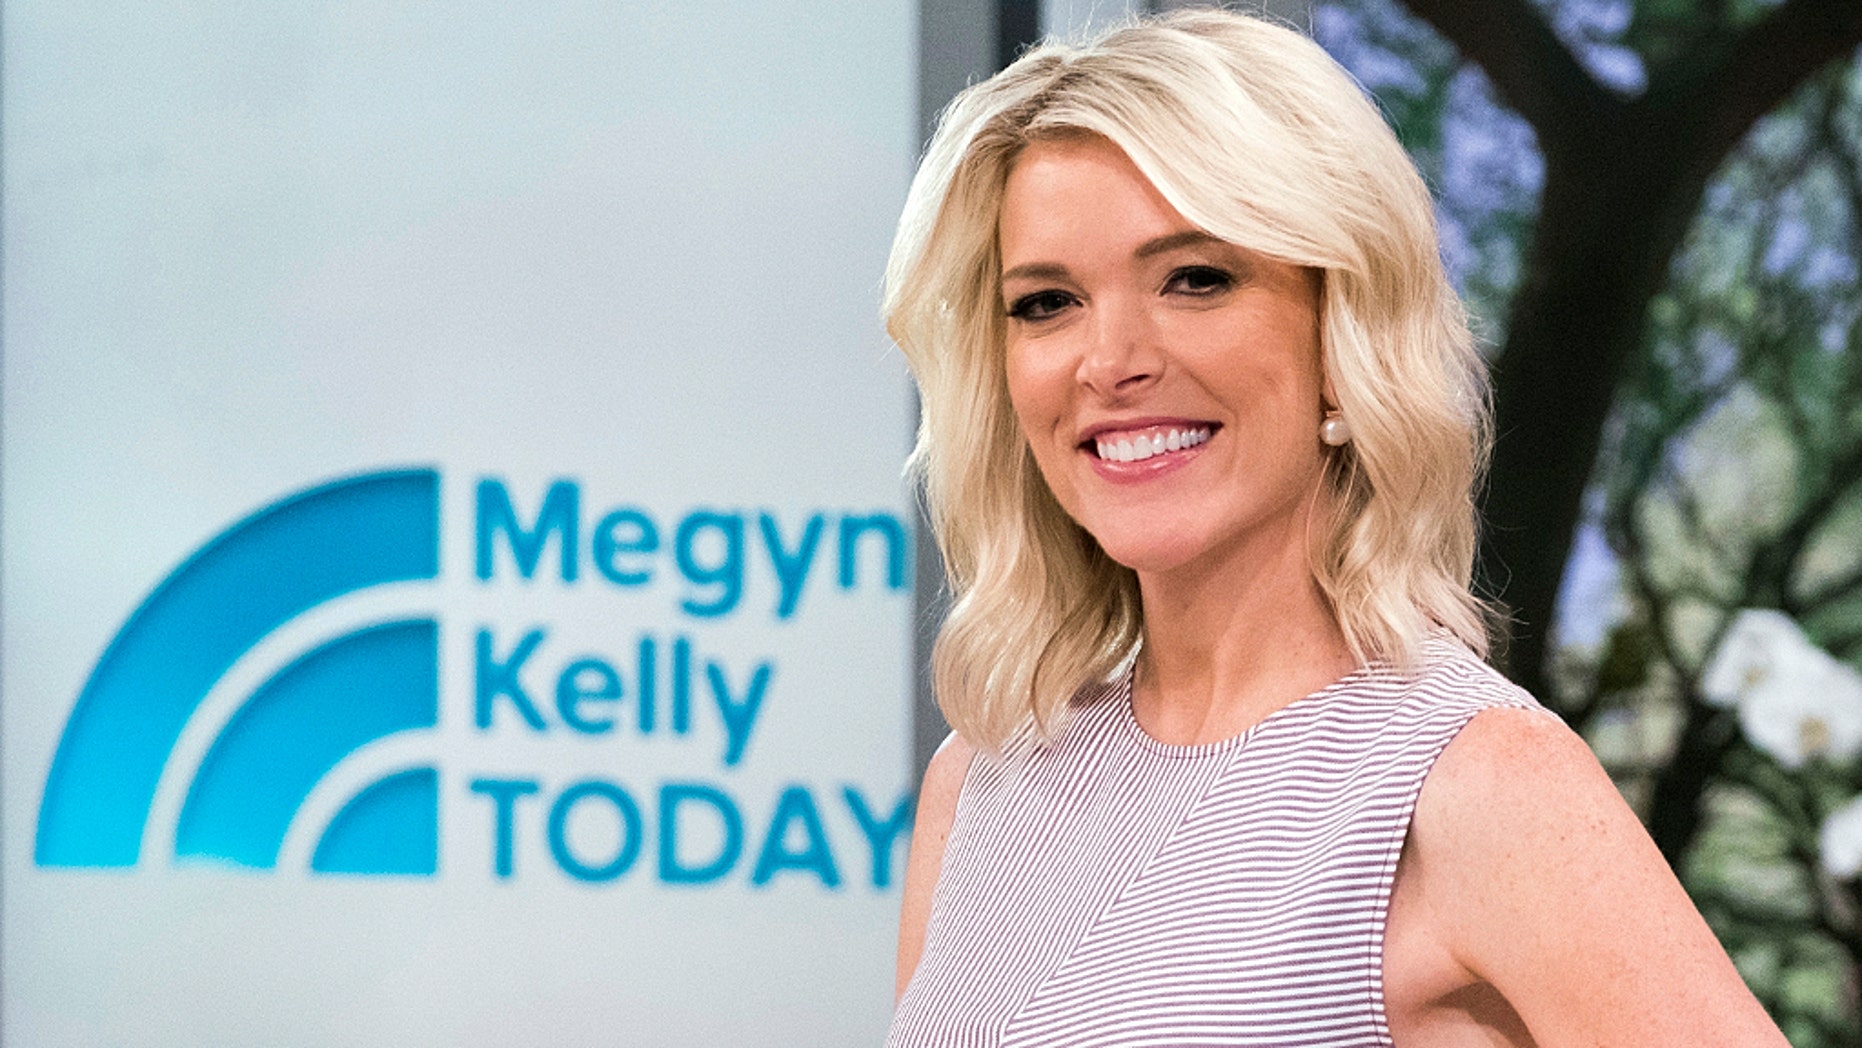 Megyn Kelly, NBC officially split